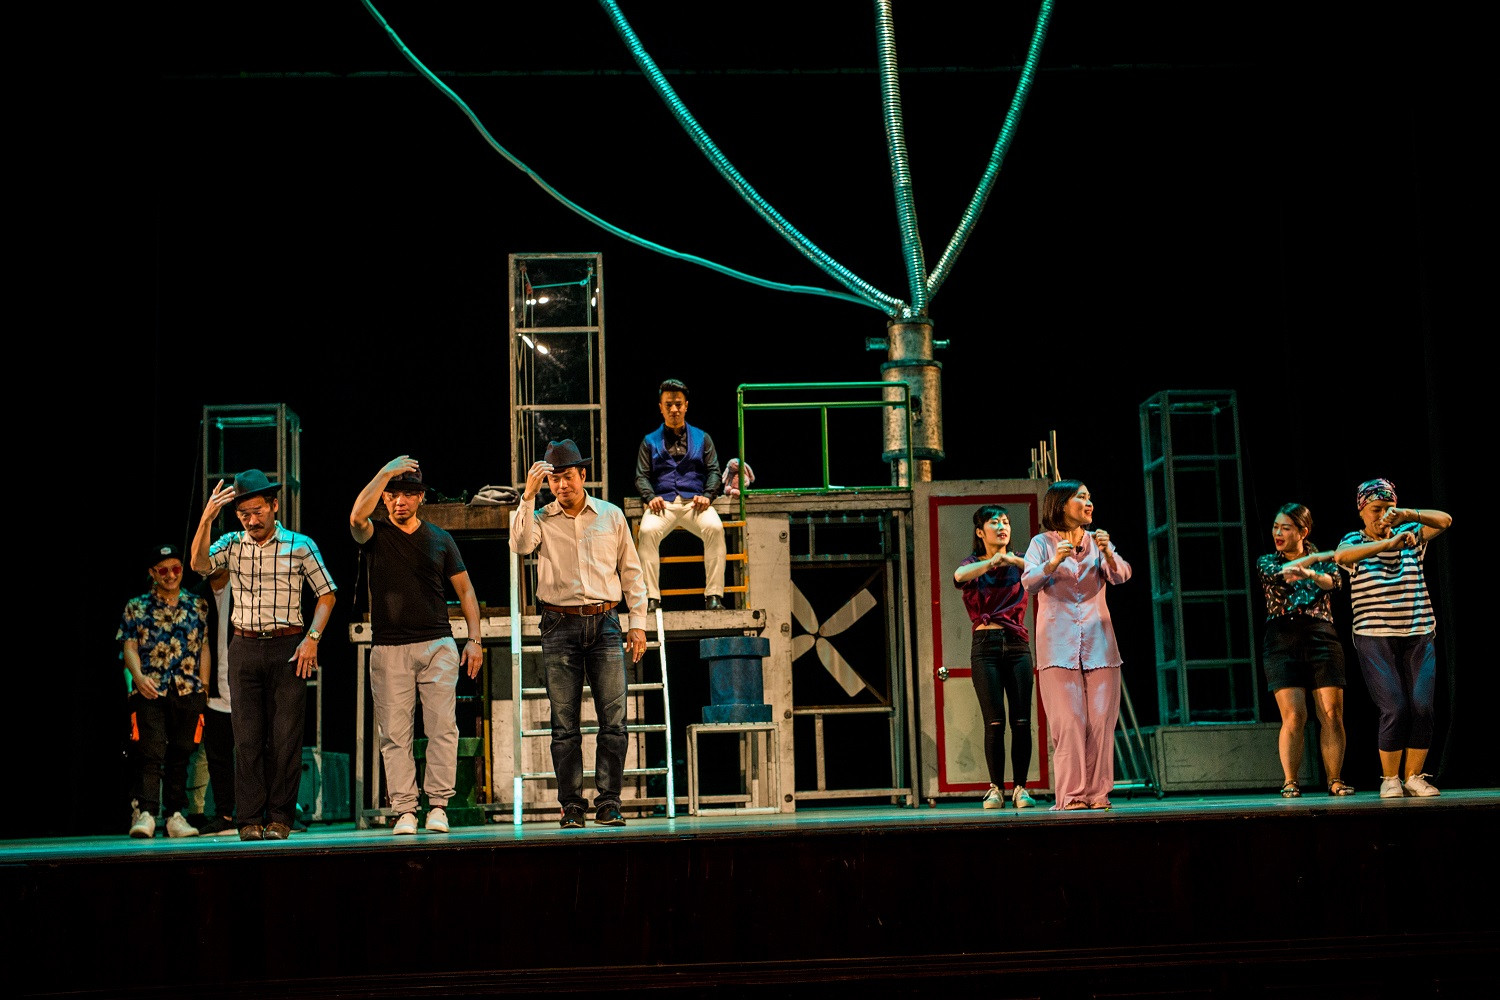 SHB đồng hành cùng nhà hát tuổi trẻ đem sân khấu kịch đến với khán giả miền nam.